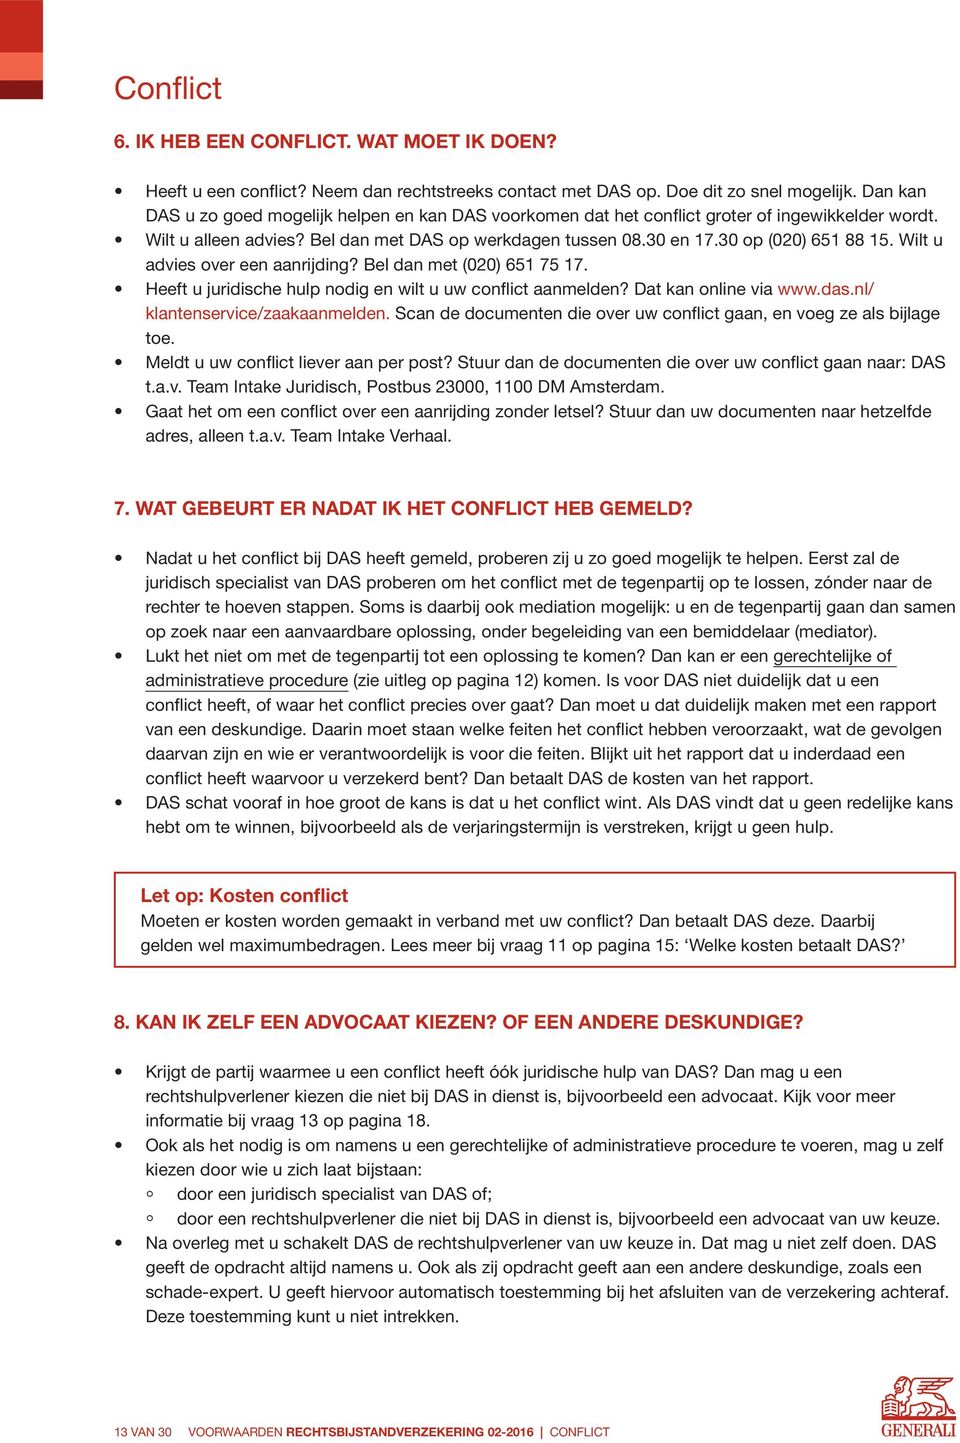 Wilt u advies over een aanrijding? Bel dan met (020) 651 75 17. Heeft u juridische hulp nodig en wilt u uw conflict aanmelden? Dat kan online via www.das.nl/ klantenservice/zaakaanmelden.